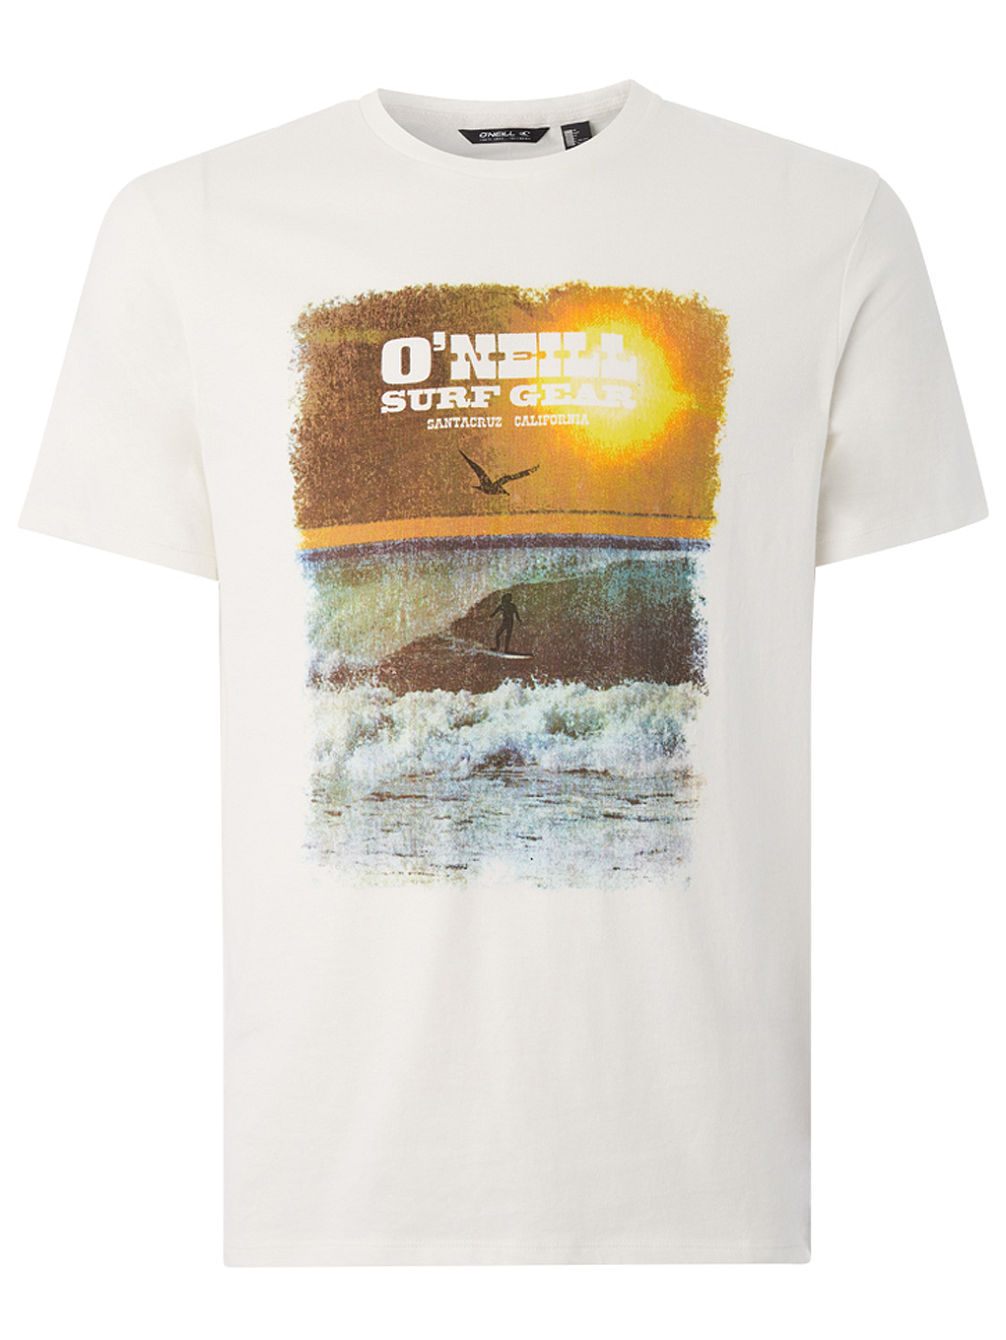 Surf Gear T-Shirt